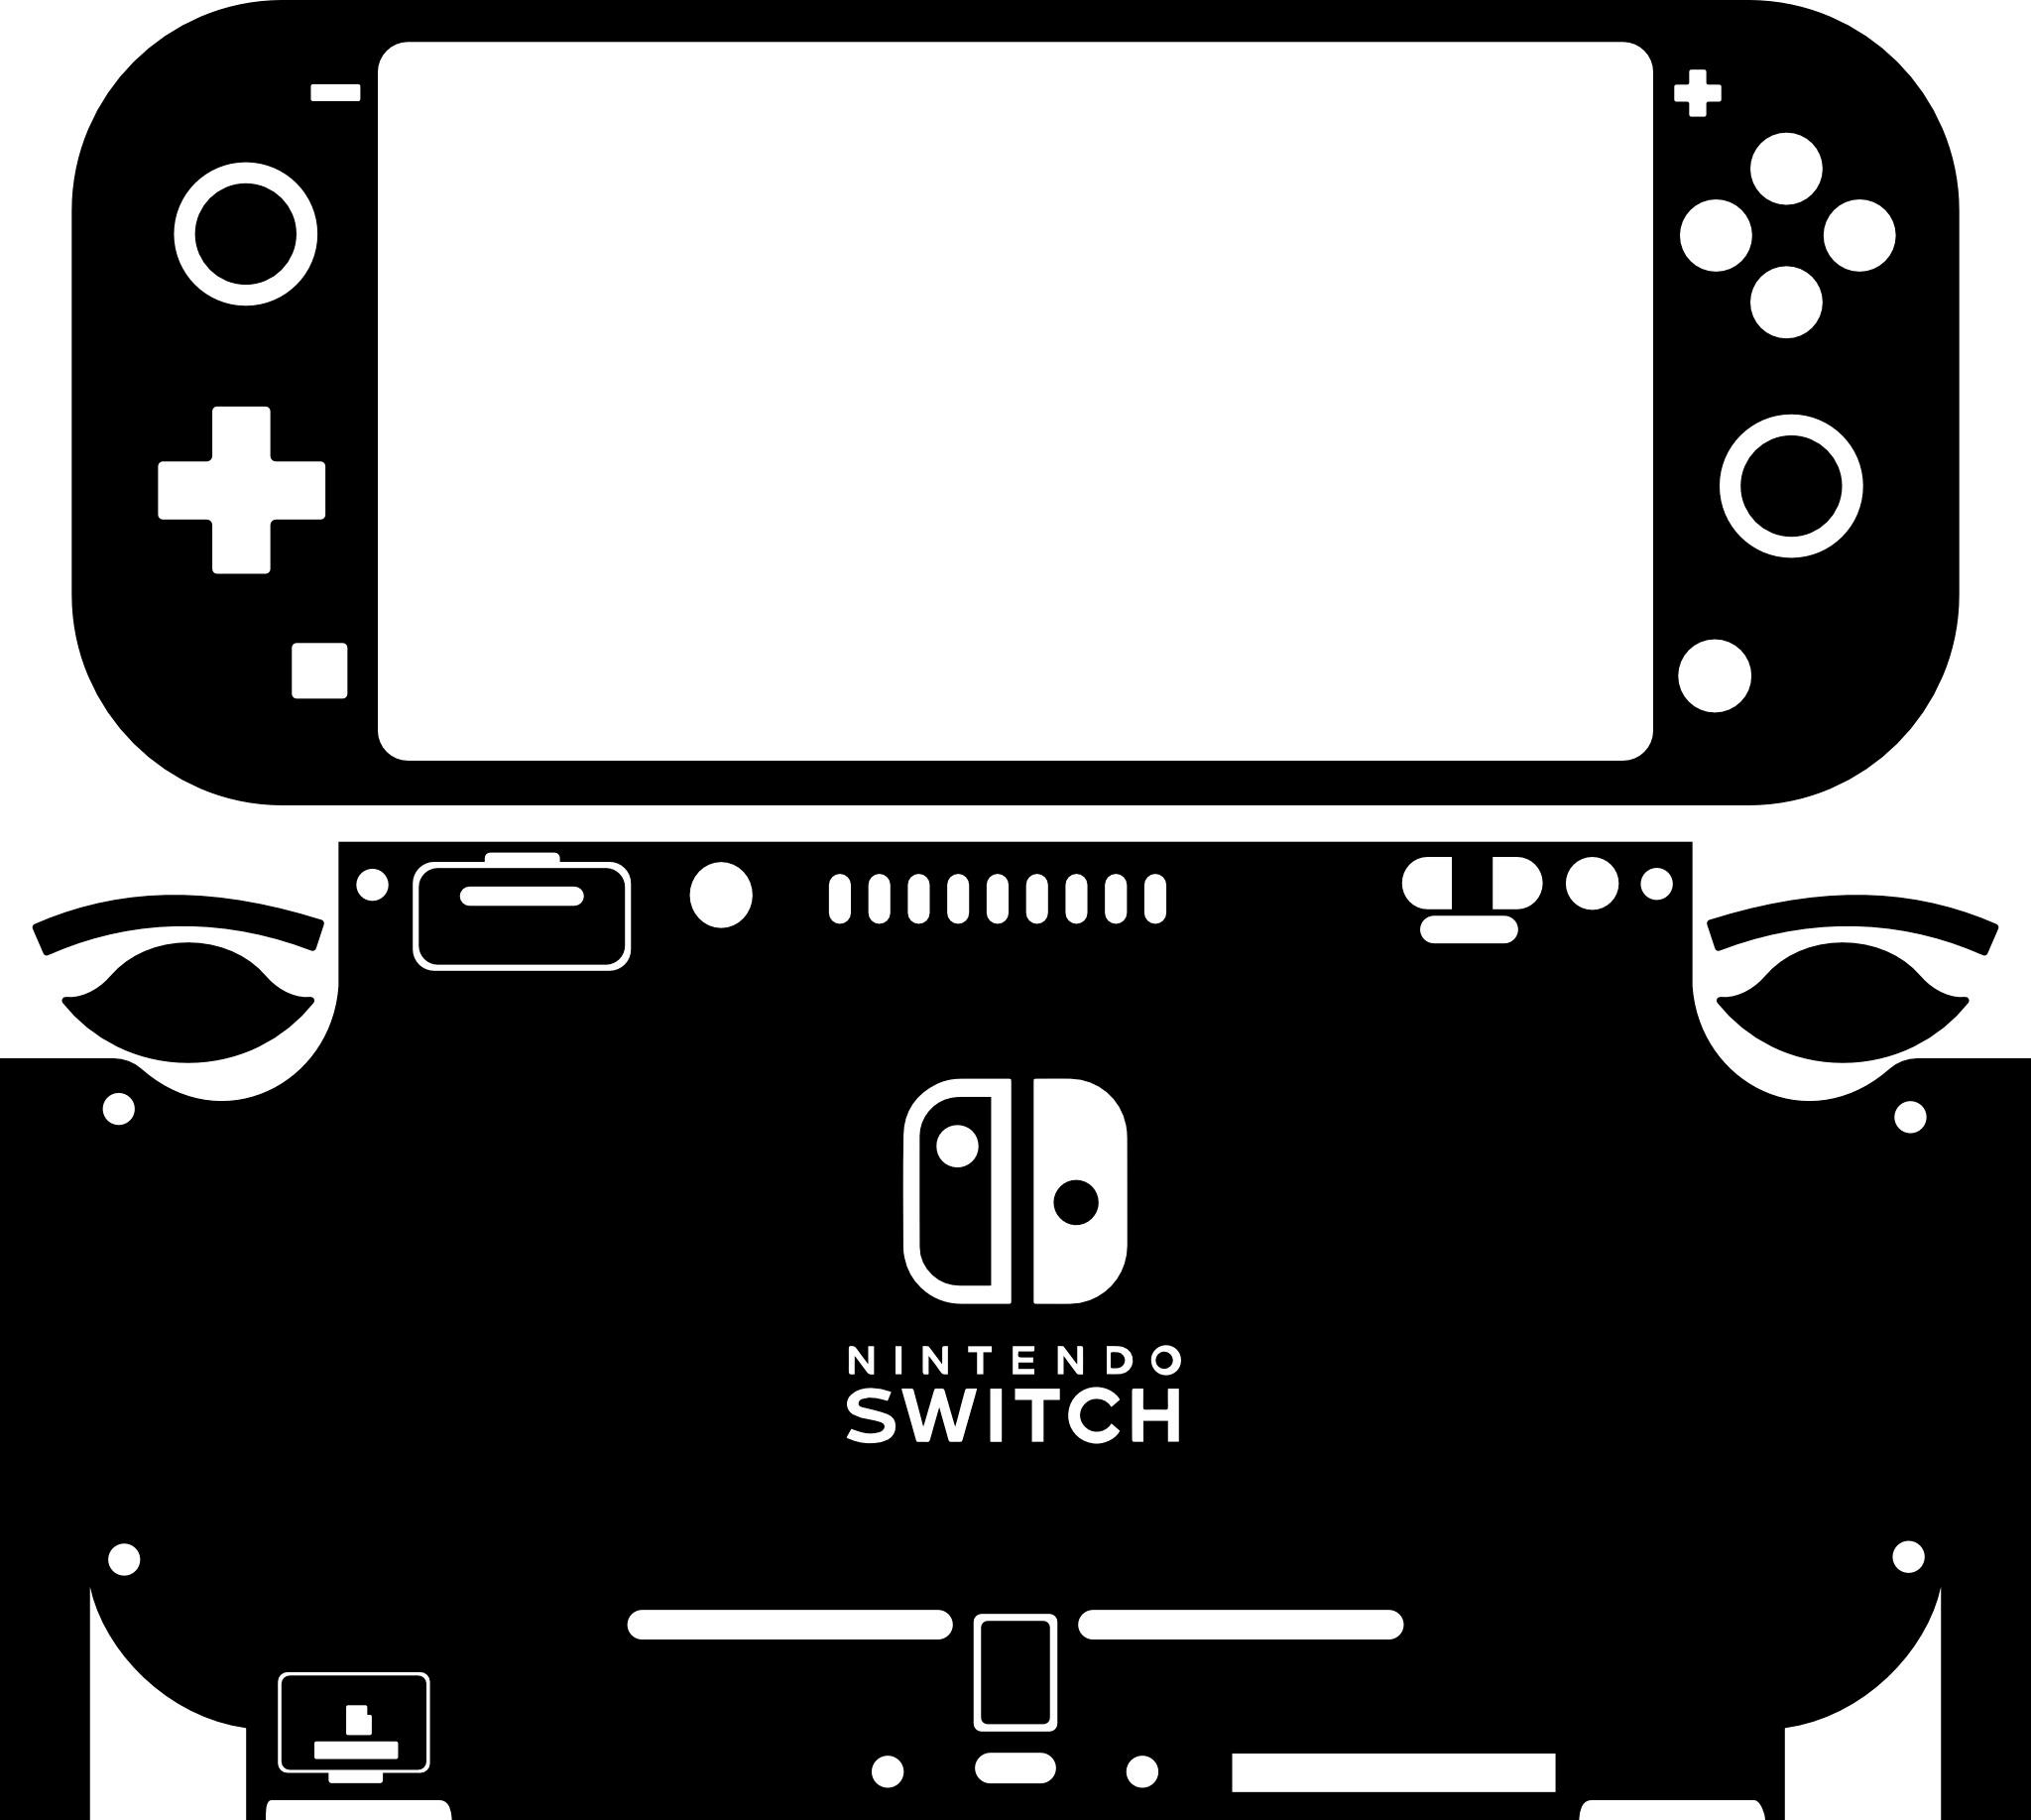 Skin decal dán Nintendo Switch Lite mẫu quả đào hồng (dễ dán, đã cắt sẵn)